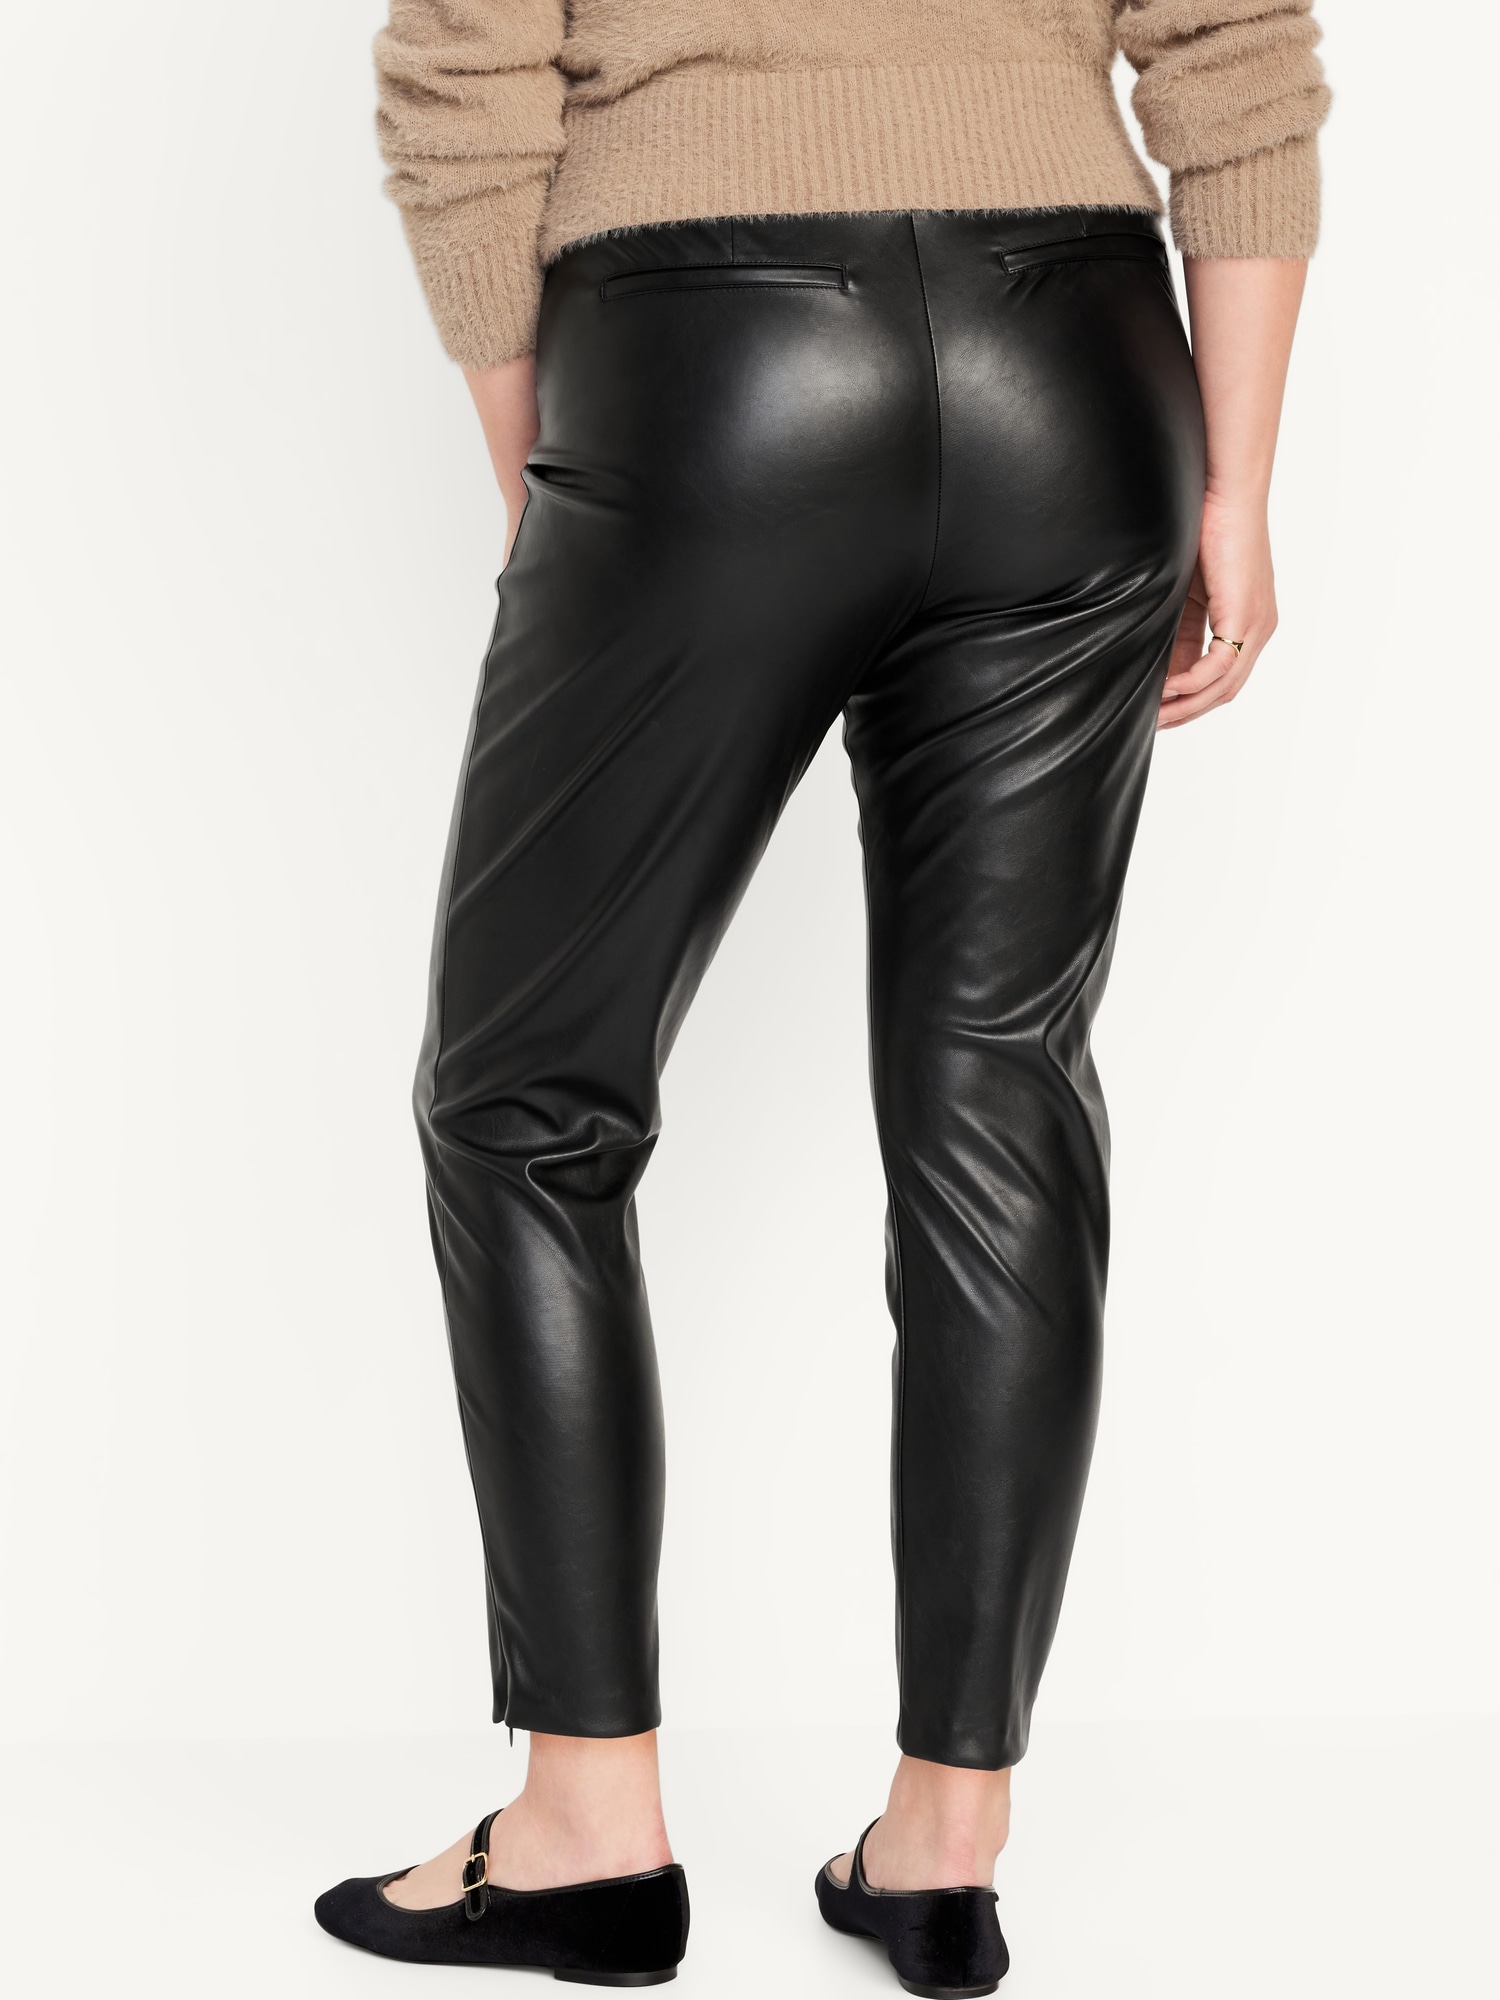 Zara High Waisted leather Pants | Leather pants, High waisted, Zara